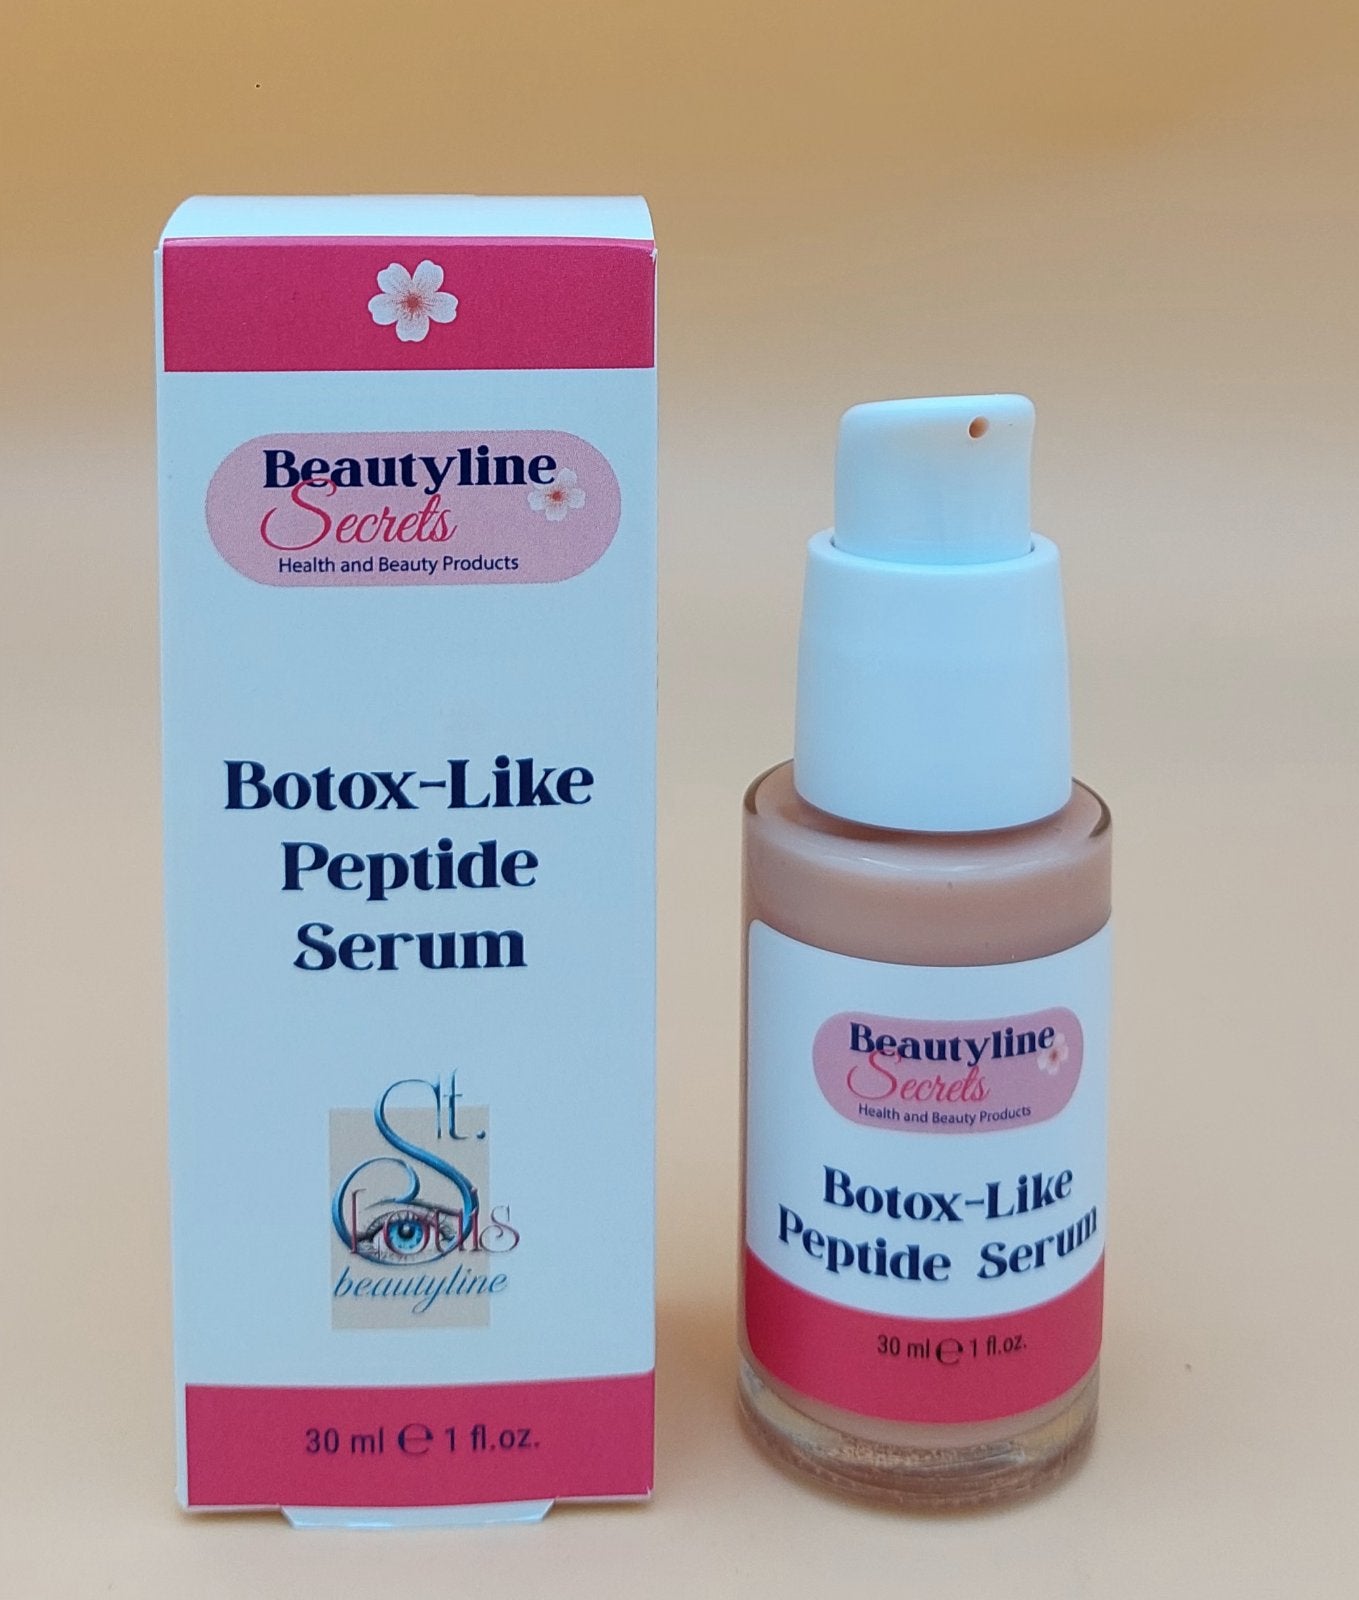 Botox-Like Peptide Serum